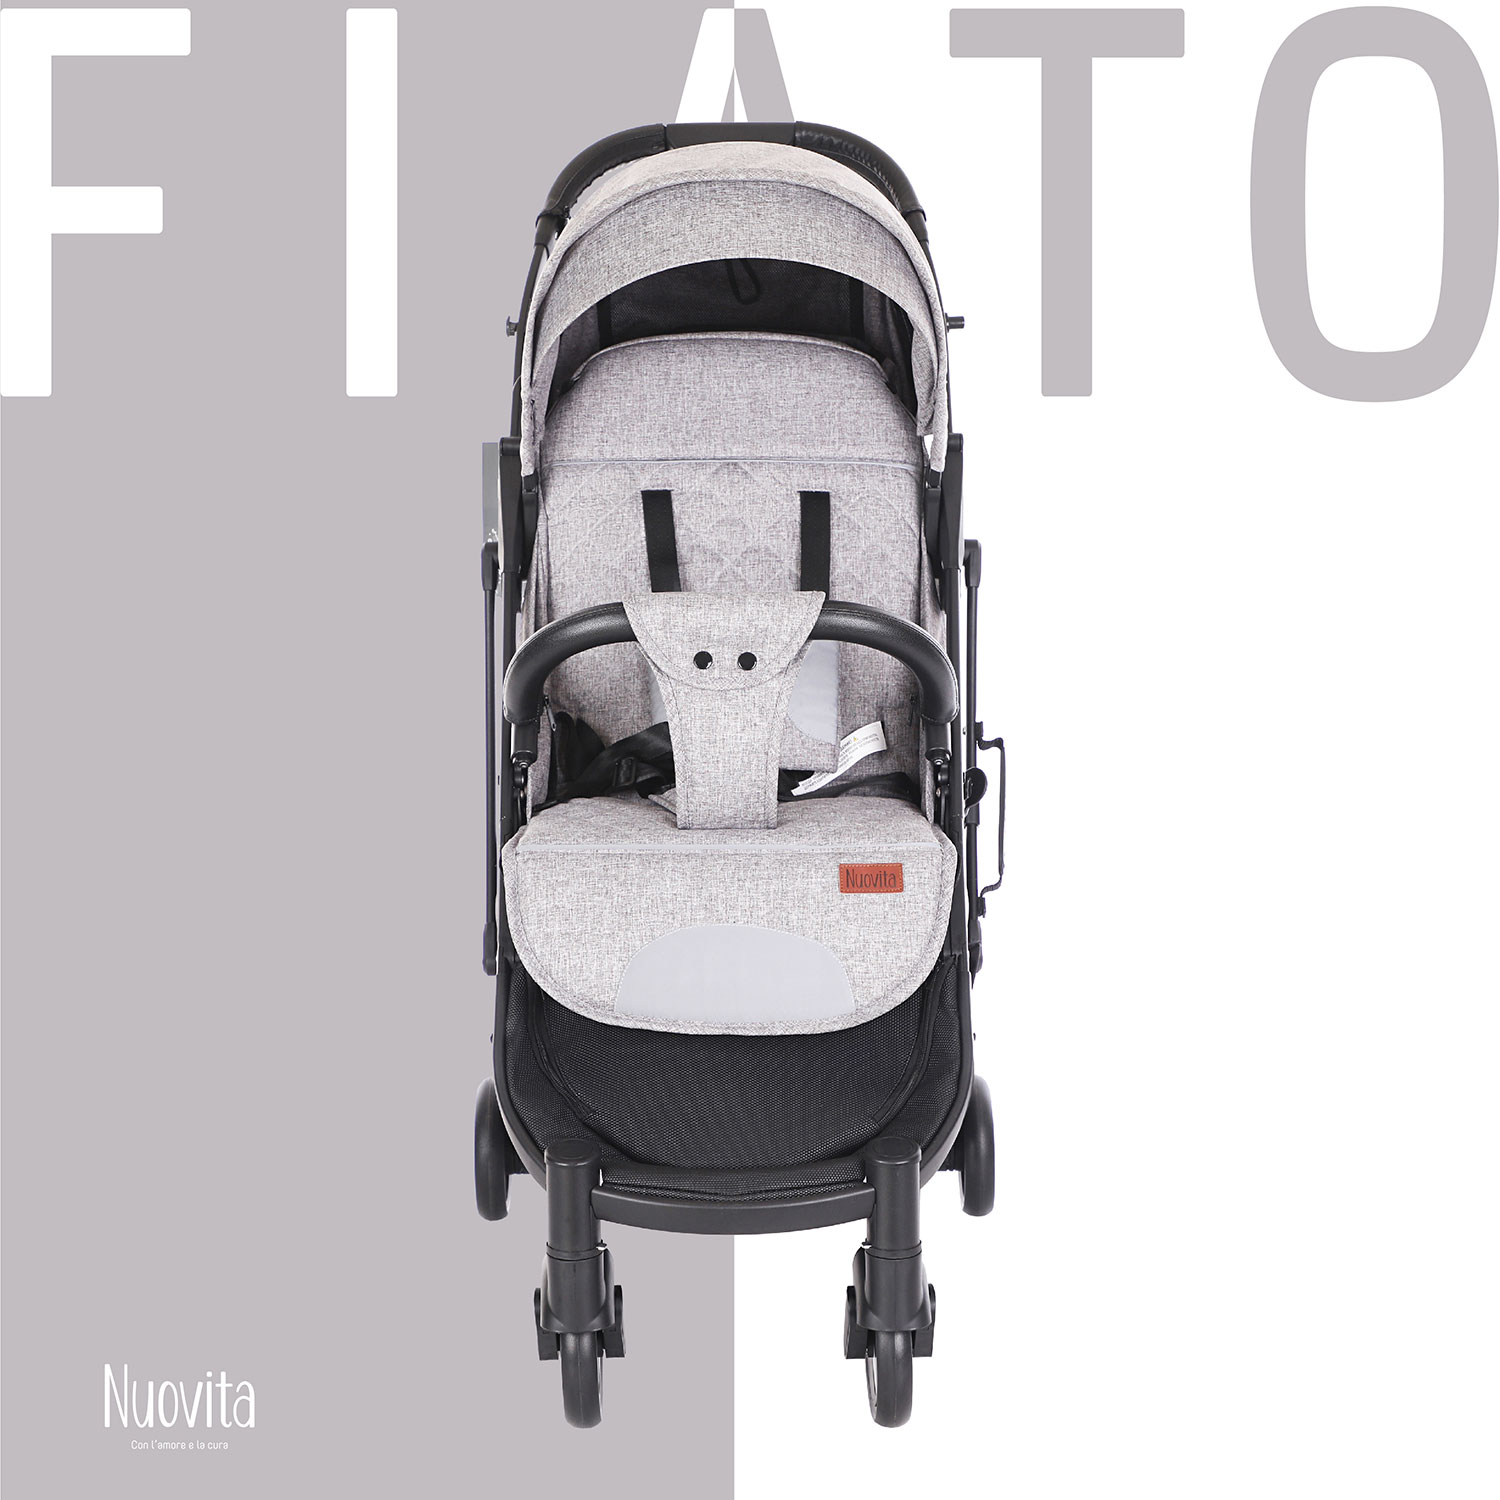 Прогулочная коляска Nuovita Fiato (Grigio, Nero / Серый, черный) прогулочная коляска nuovita fiato turchese nero бирюзовый